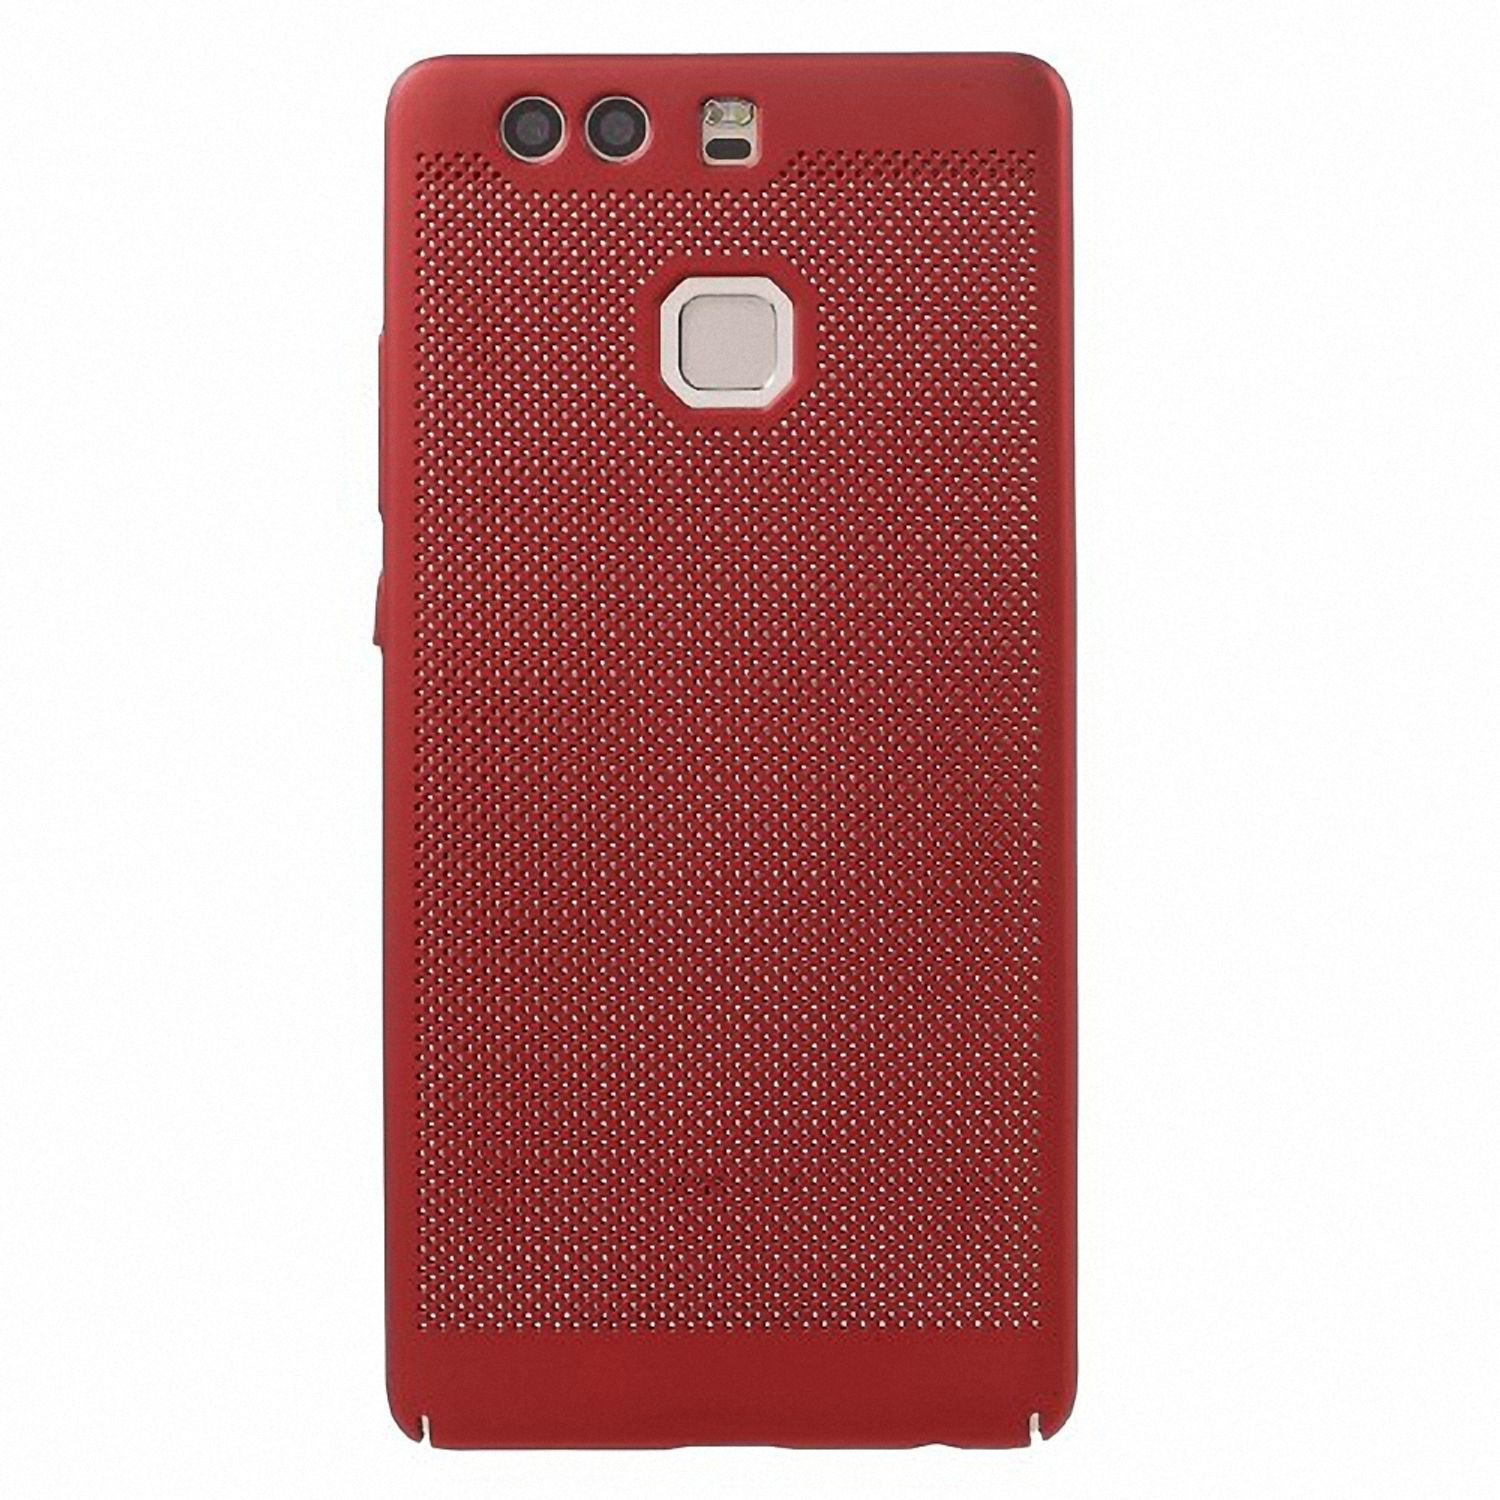 KÖNIG DESIGN Rot P9, Backcover, Huawei, Schutzhülle